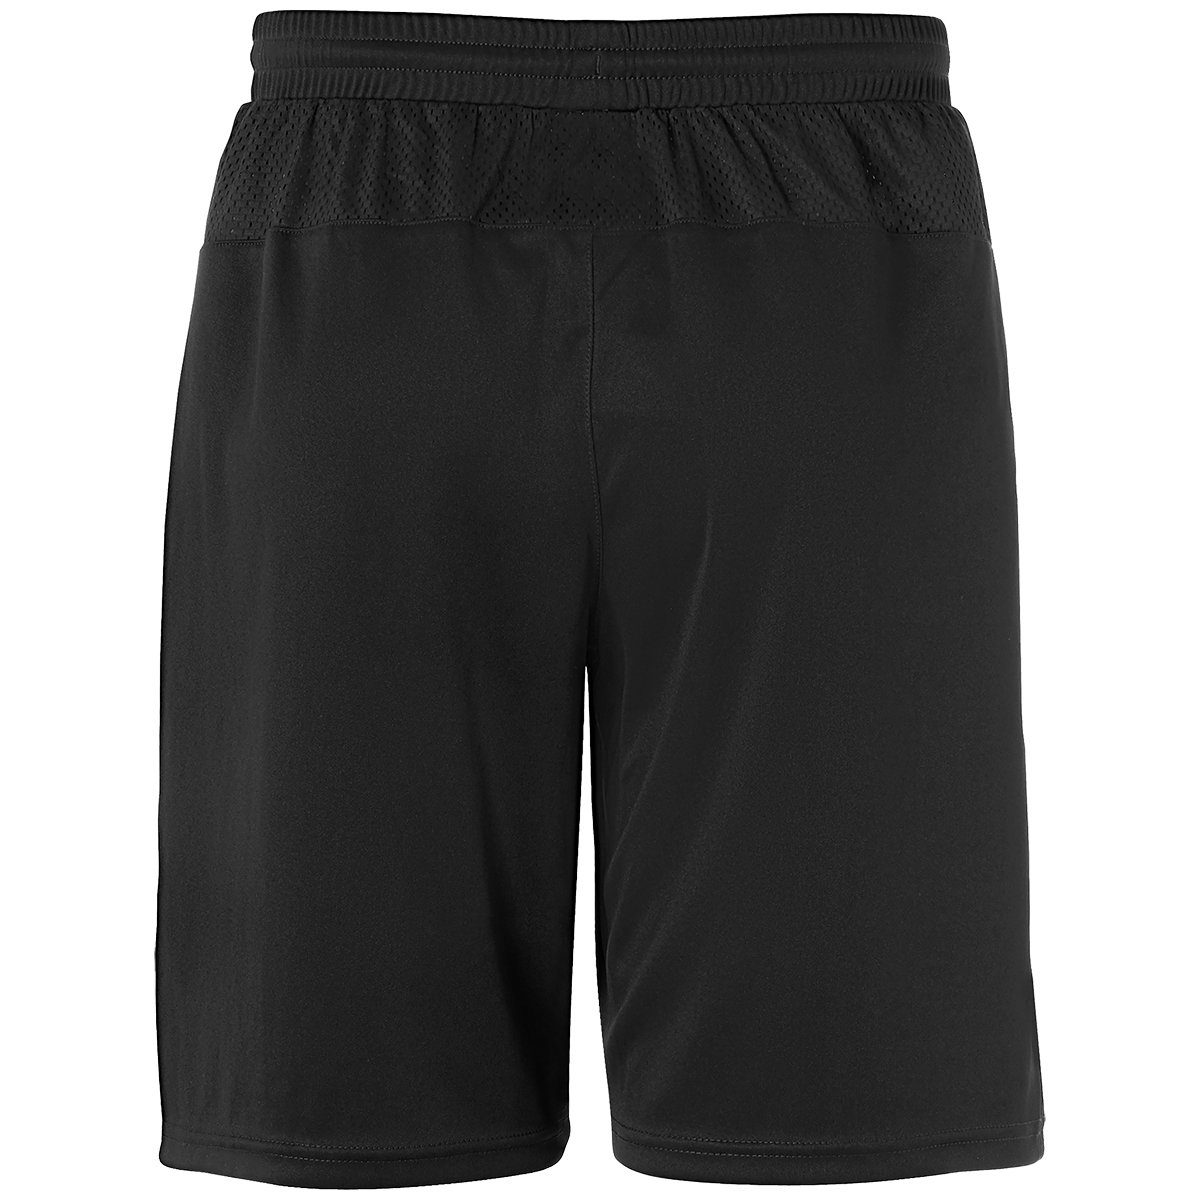 PERFORMANCE Shorts uhlsport schwarz uhlsport Shorts SHORTS